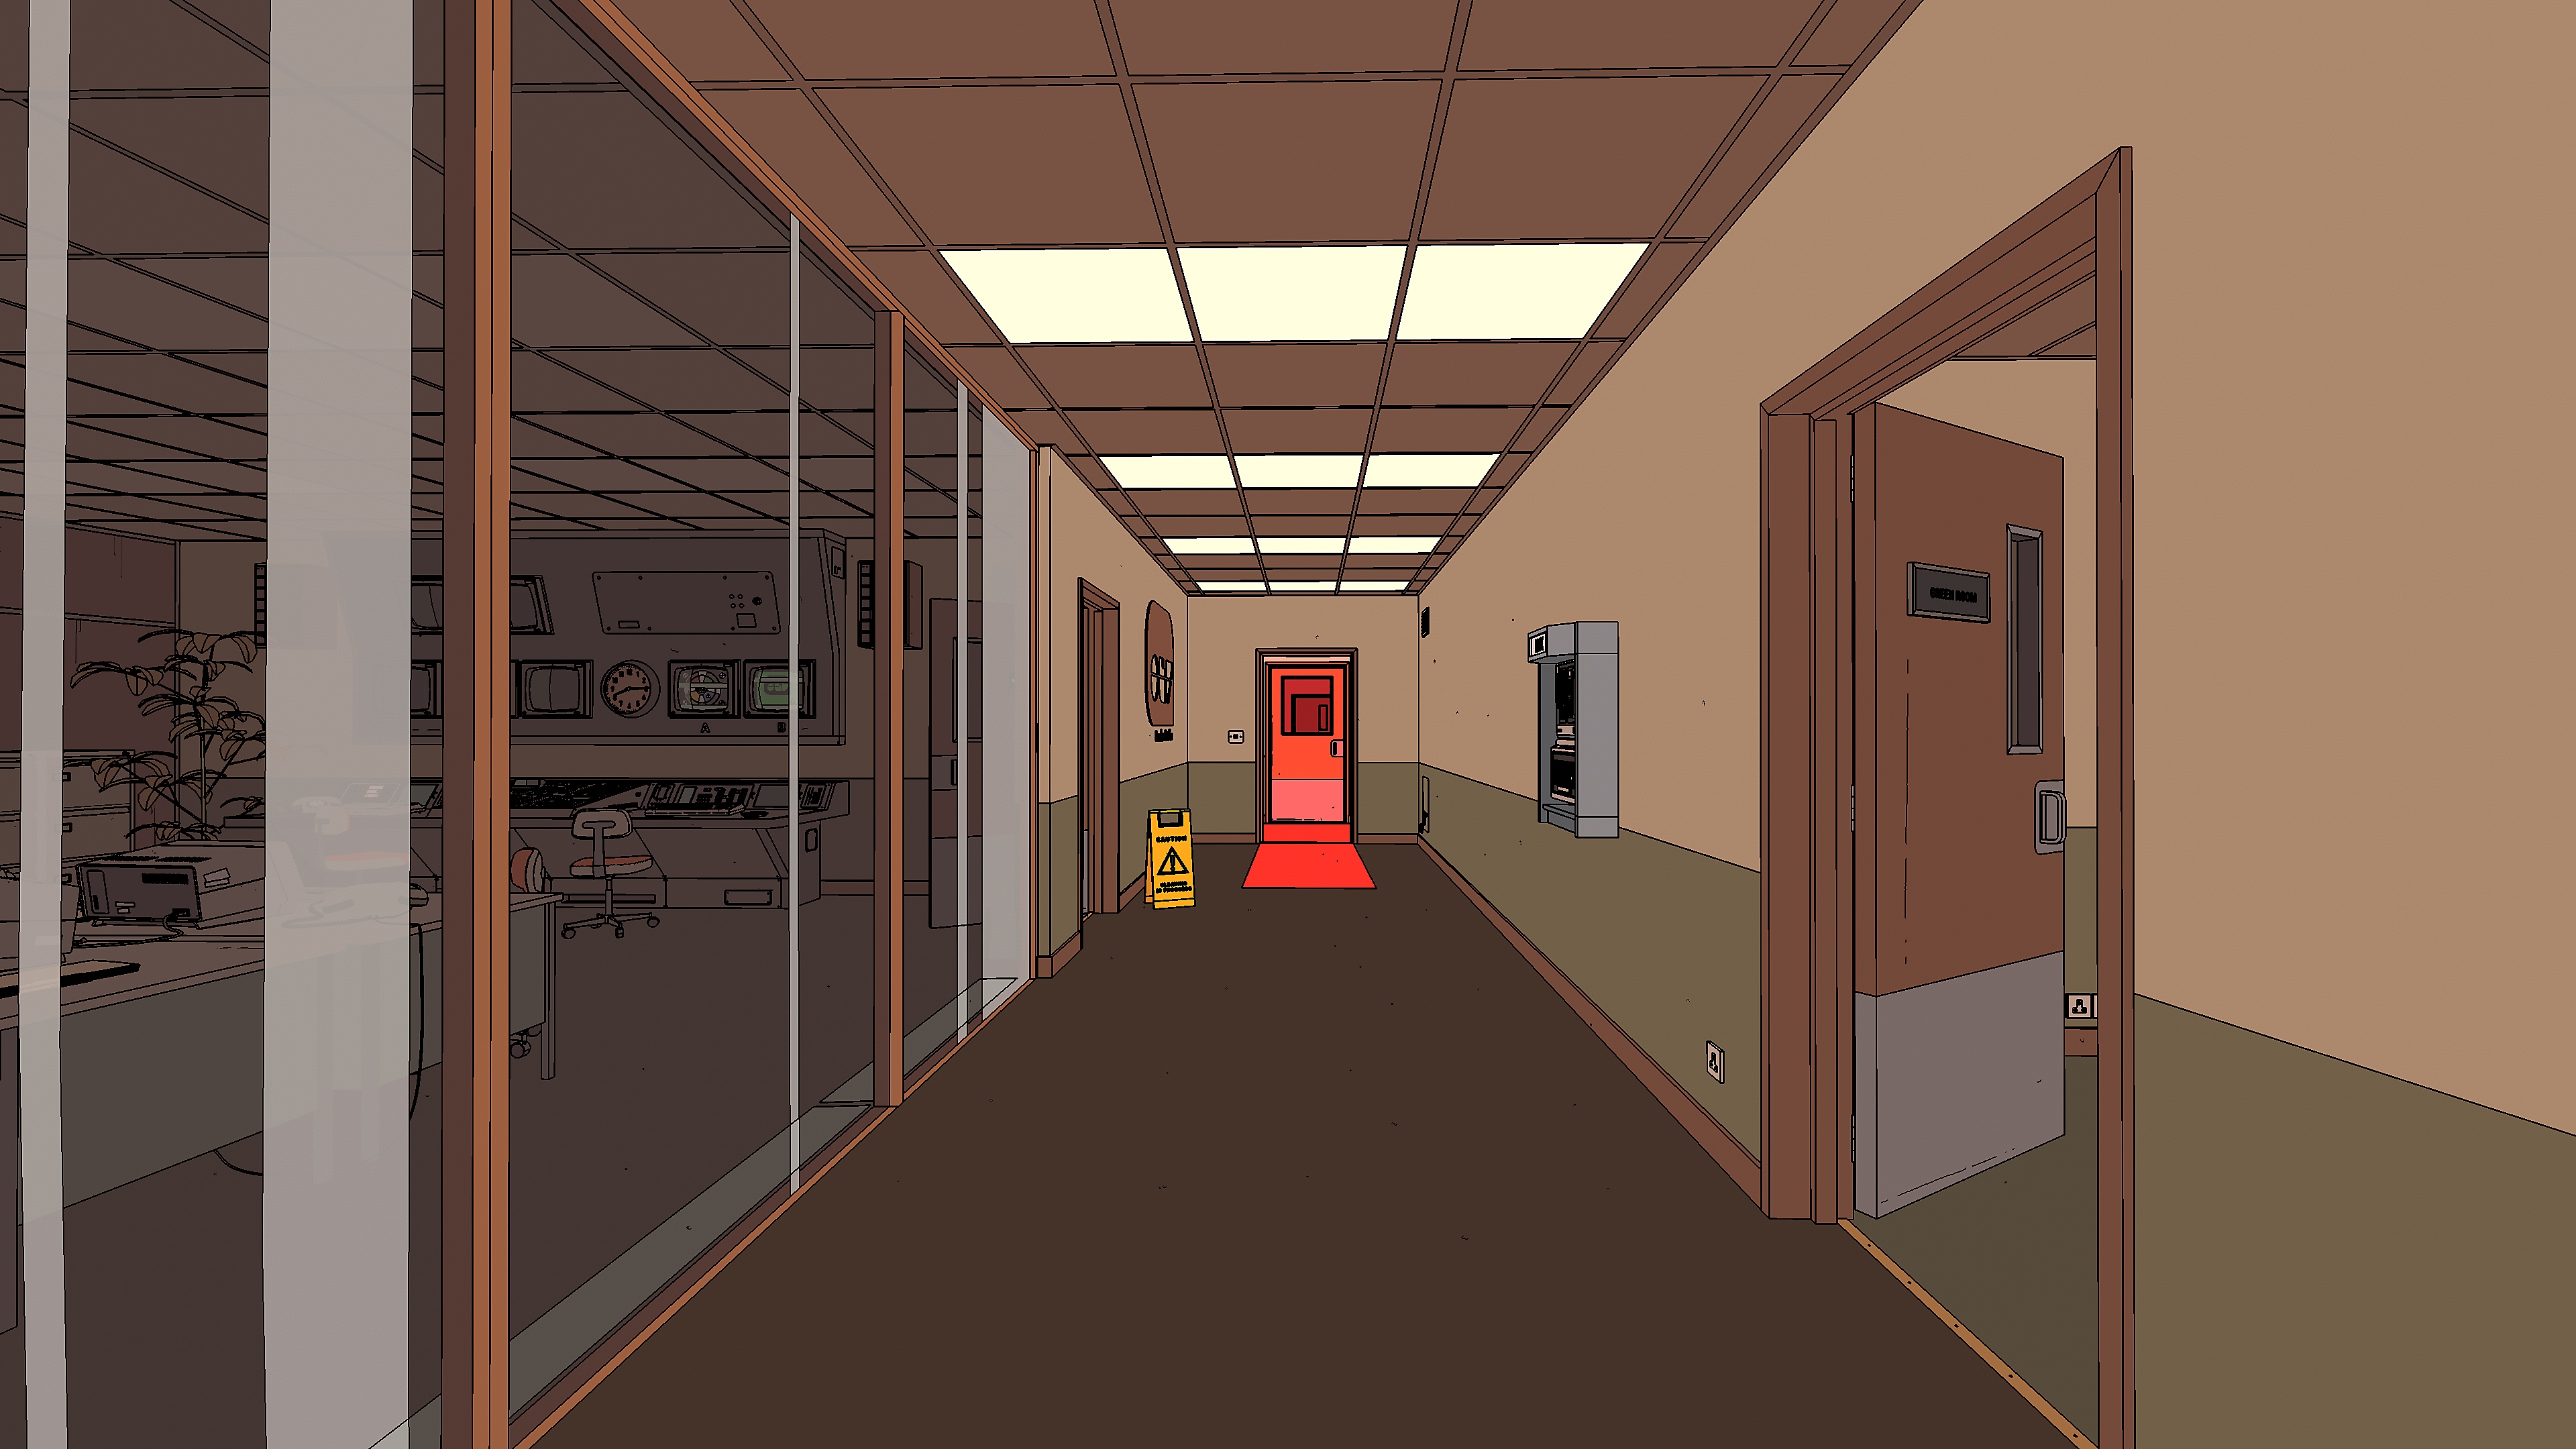 Rollerdrome – zrzut ekranu przedstawiający korytarz z wieloma drzwiami